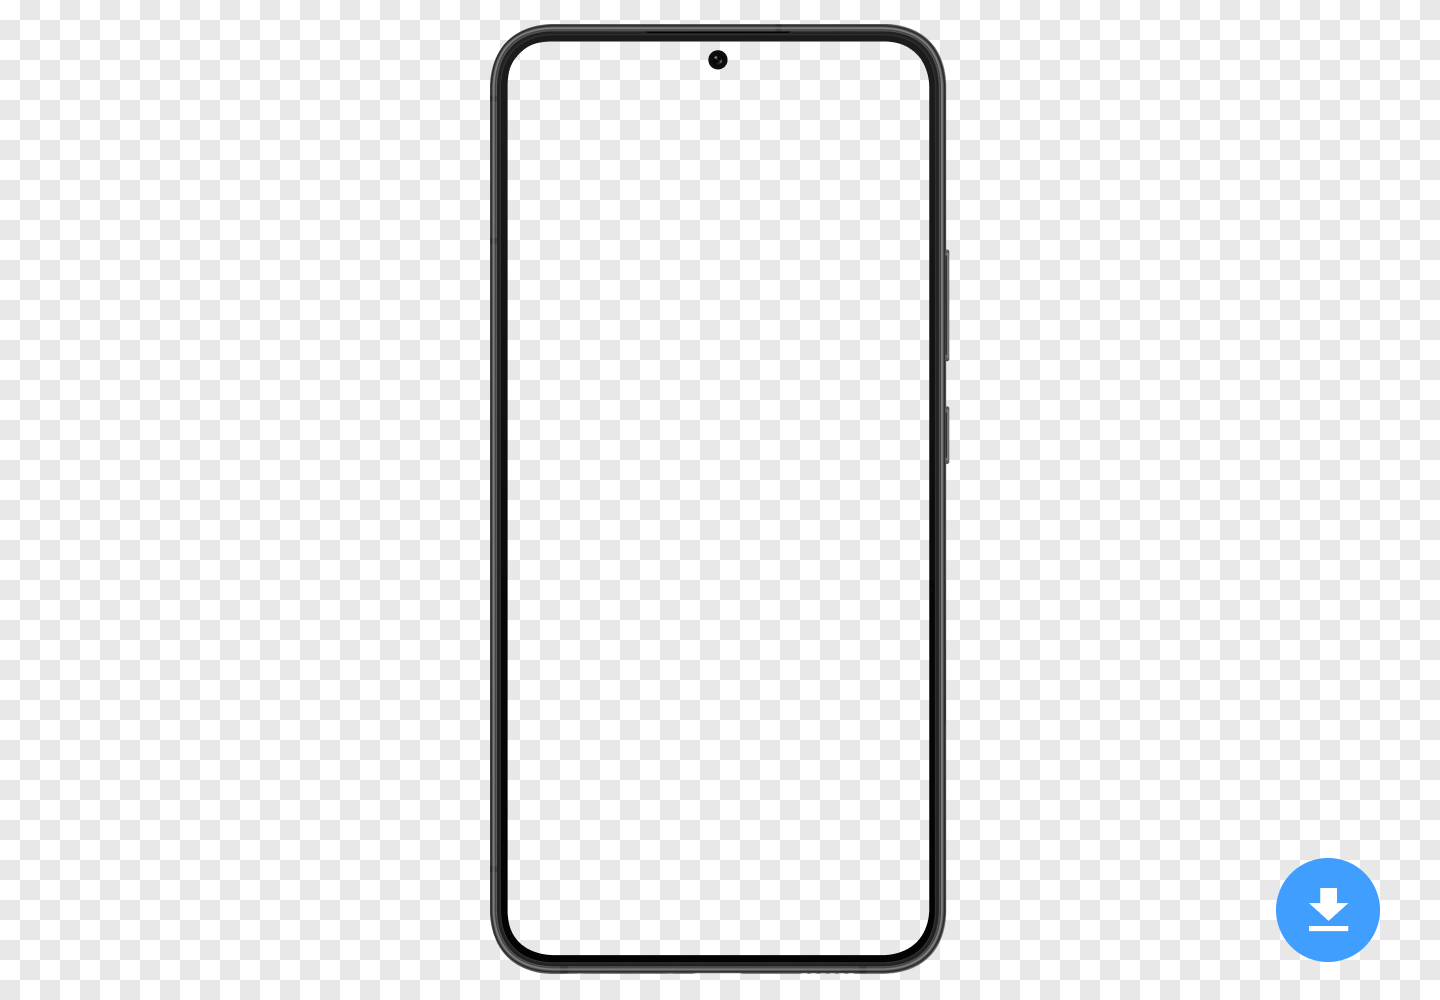 Maqueta HD gratuita de Samsung Galaxy S22+ (2022) en formato de imagen PNG y PSD con fondo transparente